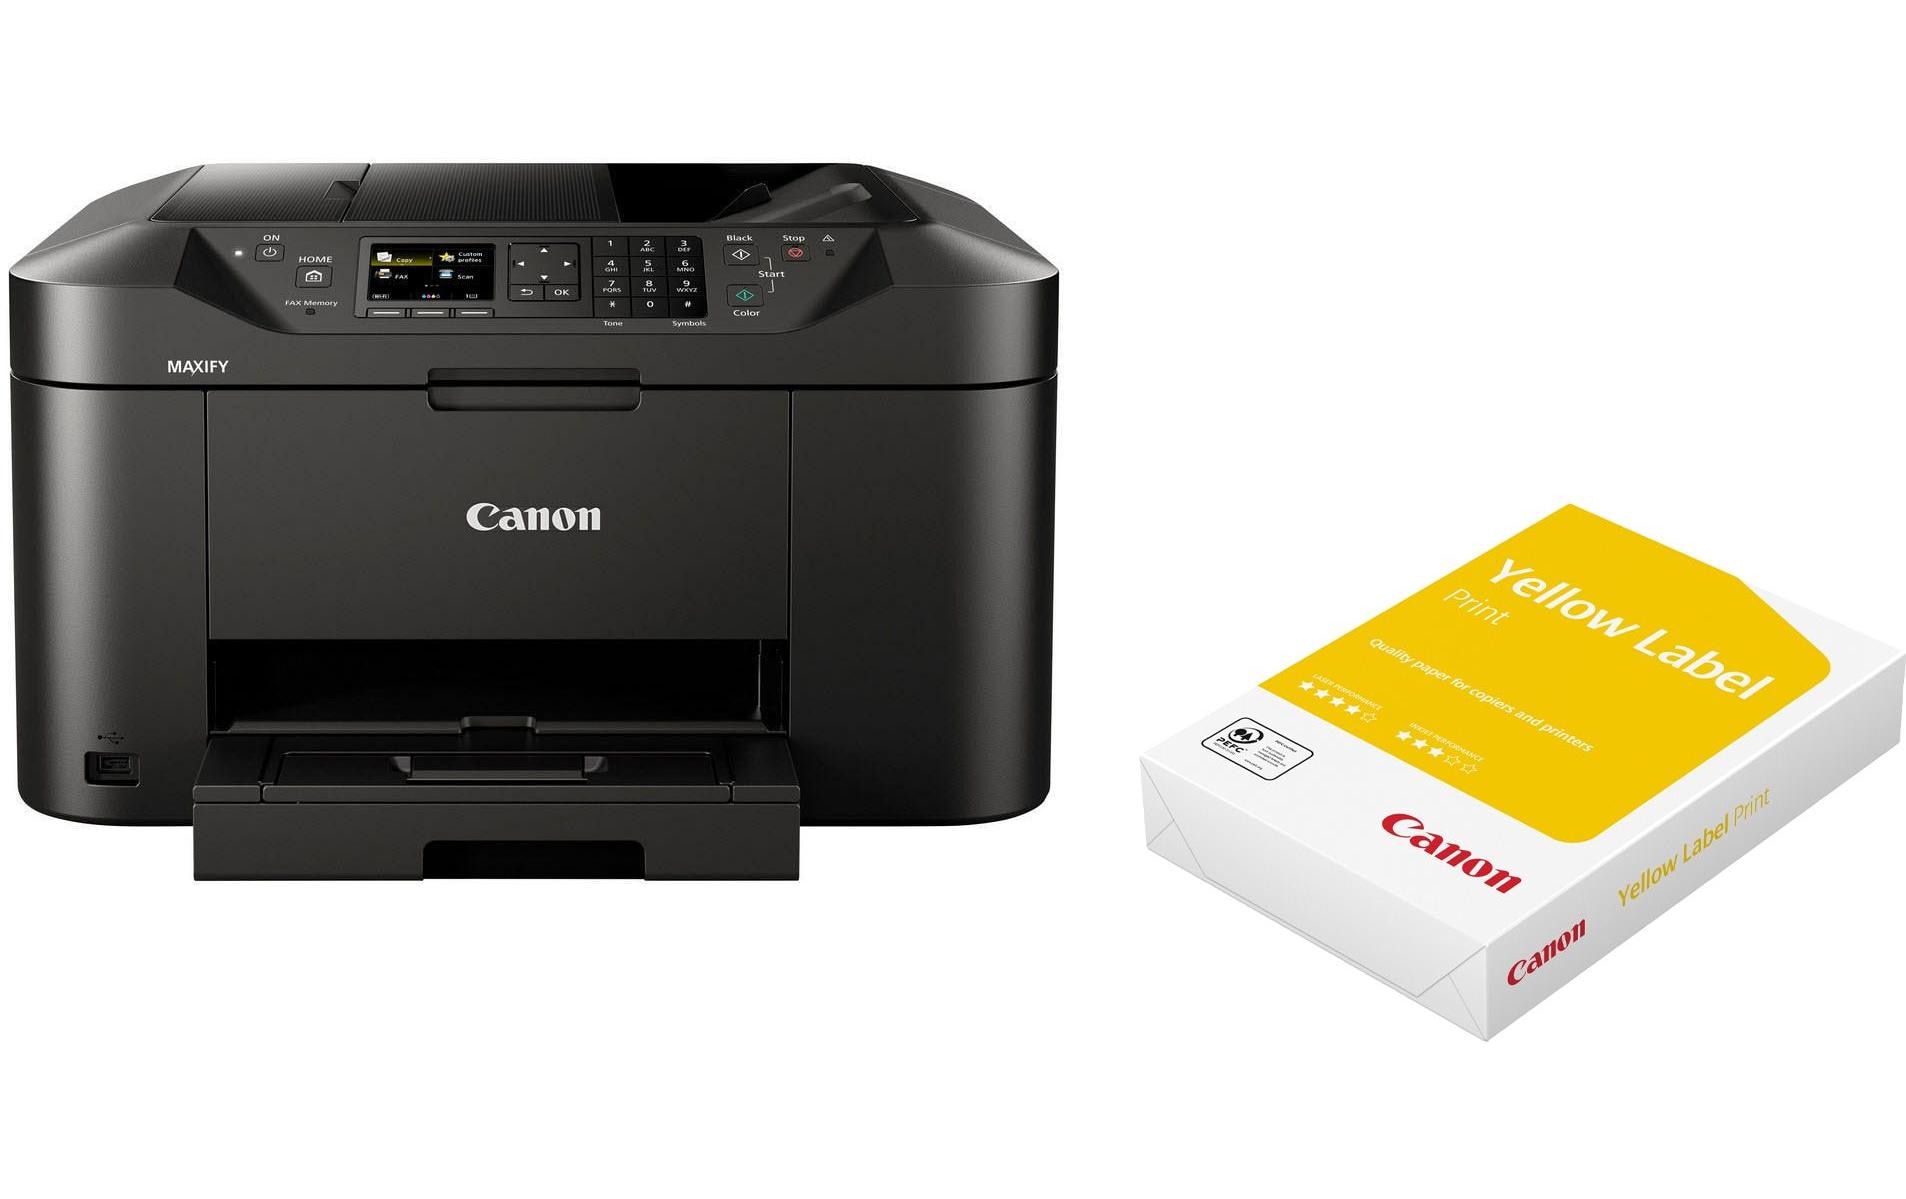 Canon Multifunktionsdrucker MAXIFY MB2150 inkl. Kopierpapier